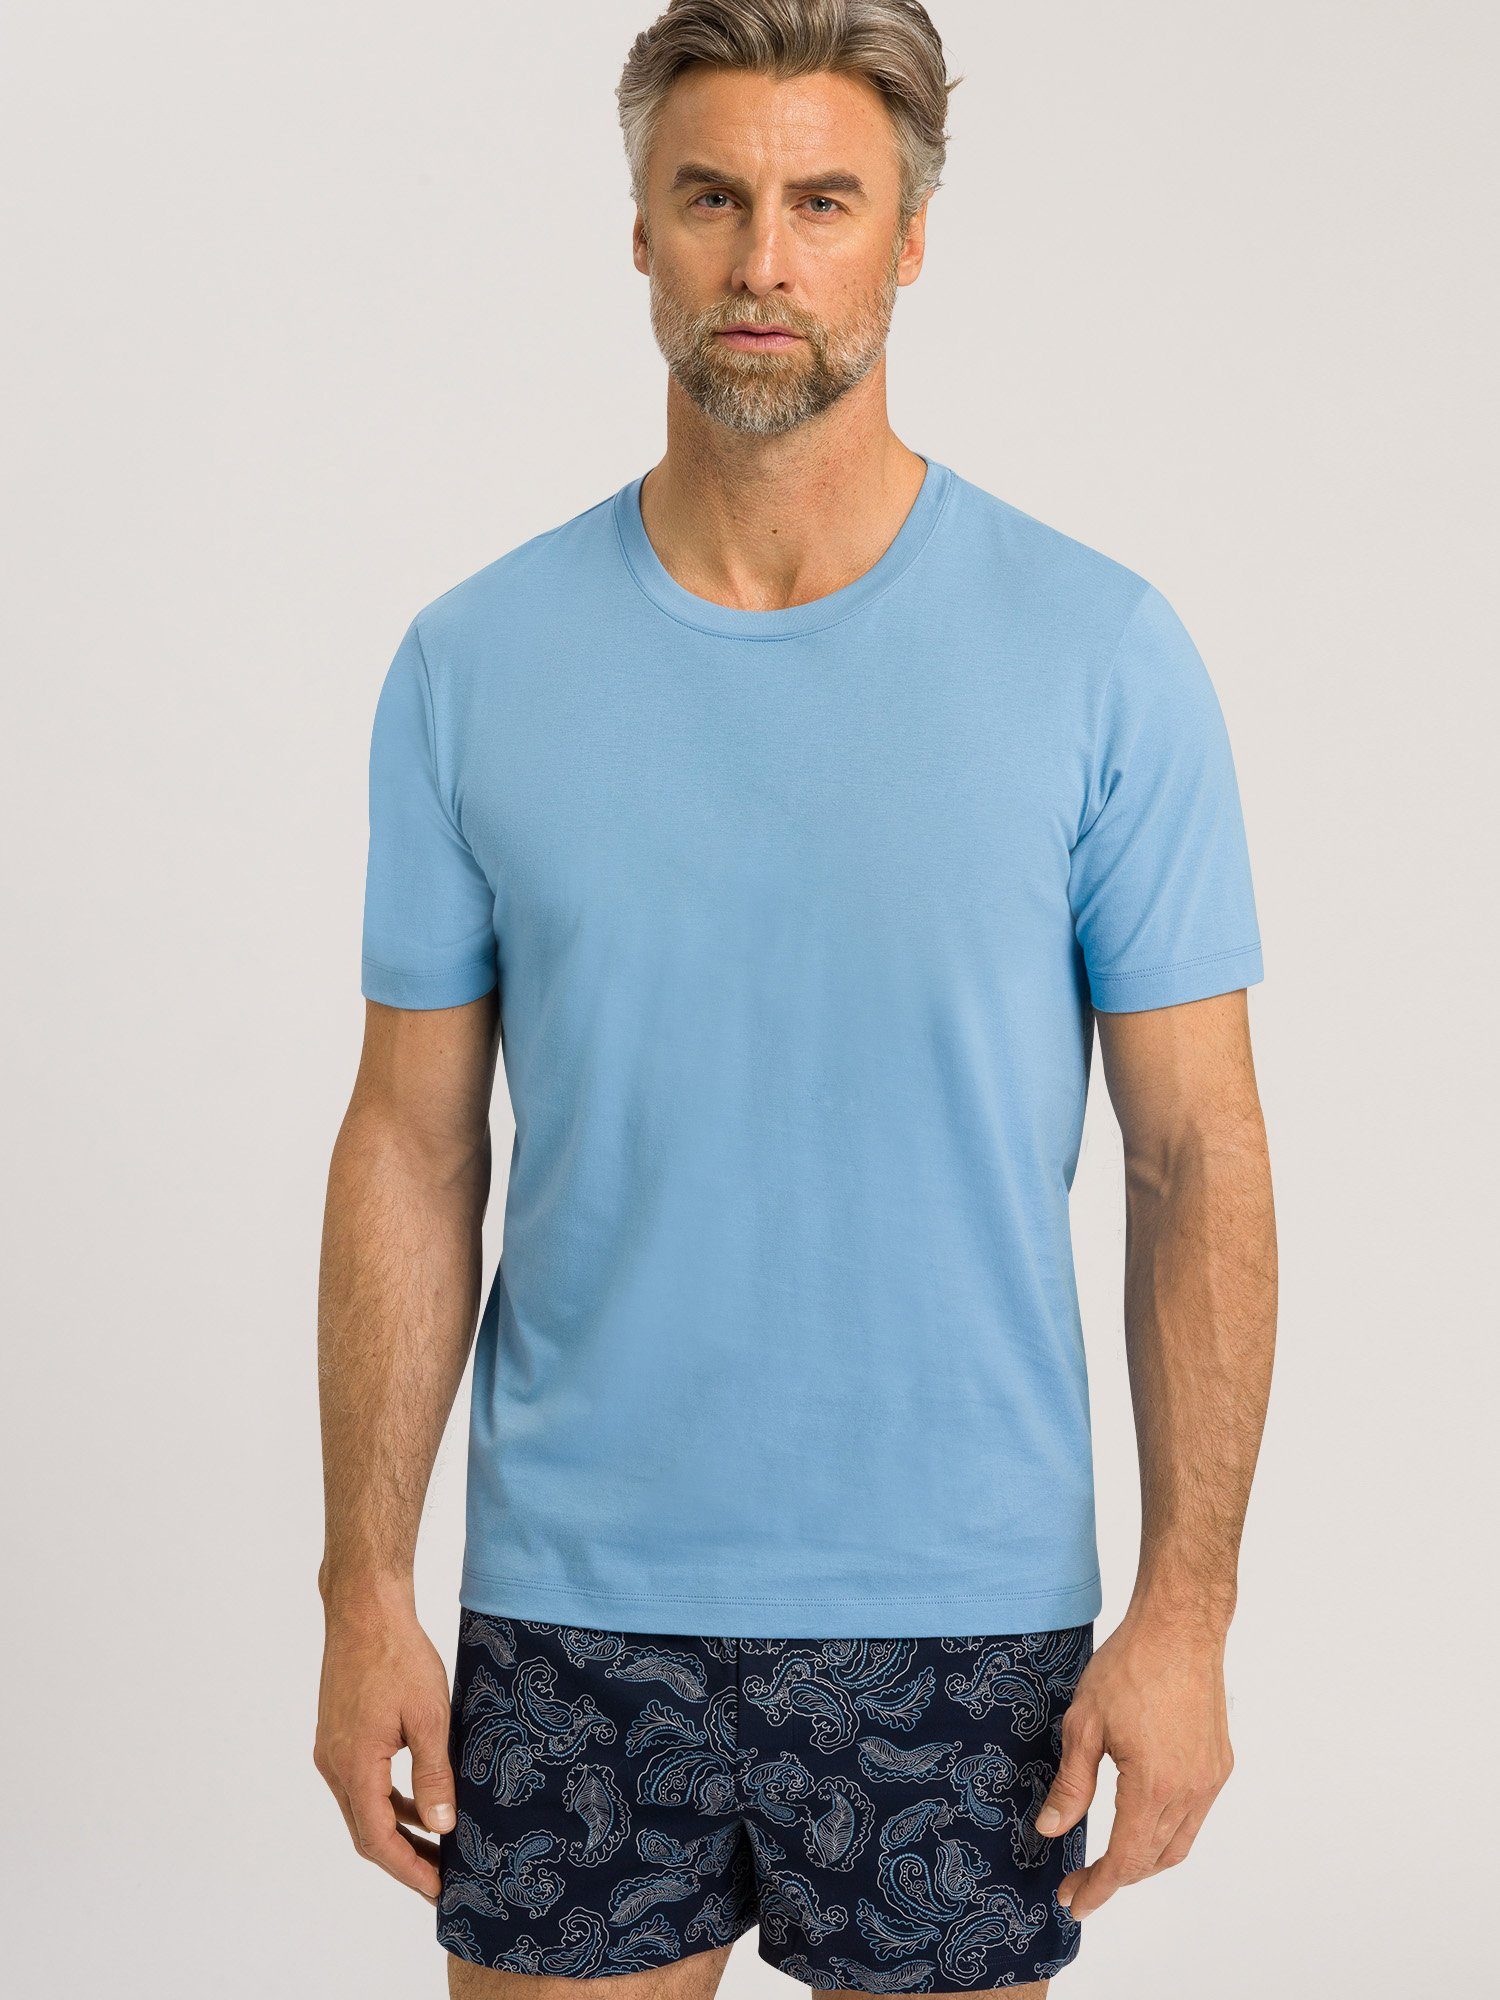 Shirts bonnie Hanro T-Shirt blue Living